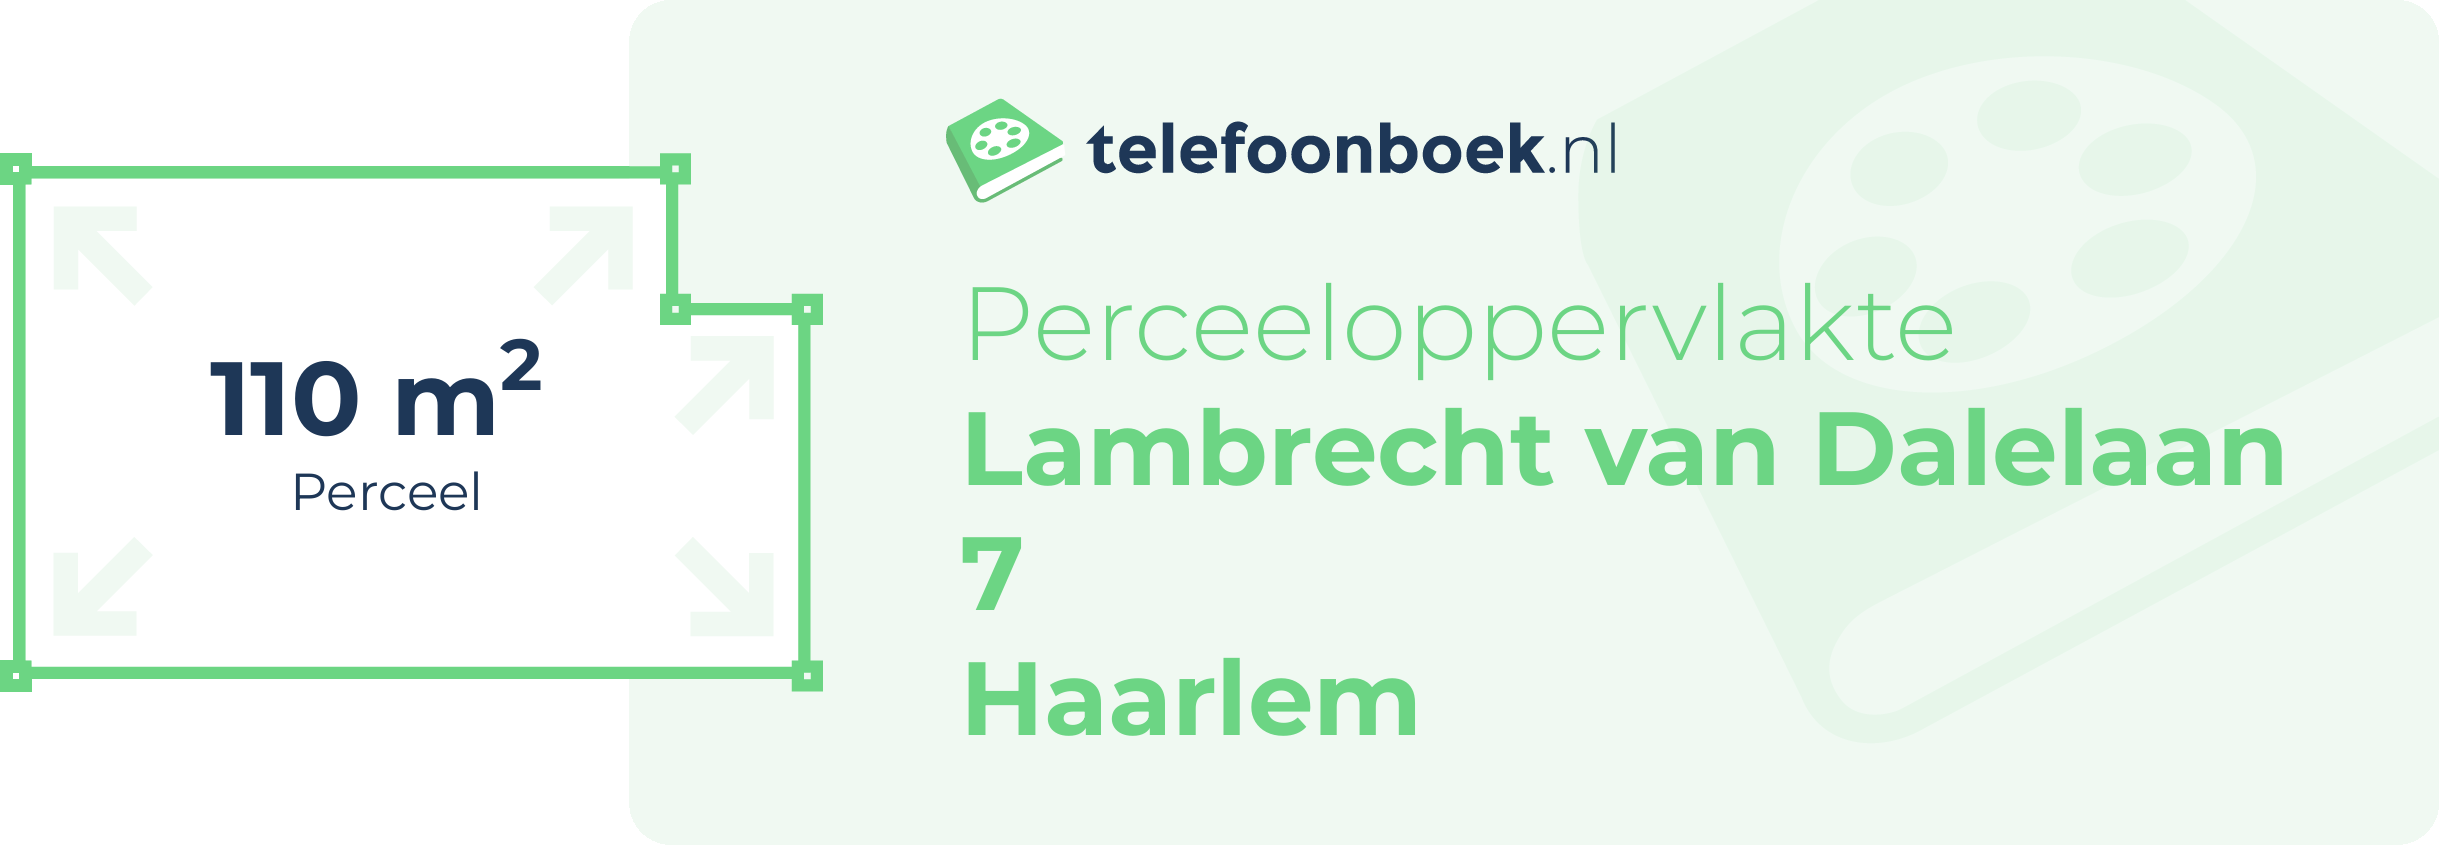 Perceeloppervlakte Lambrecht Van Dalelaan 7 Haarlem